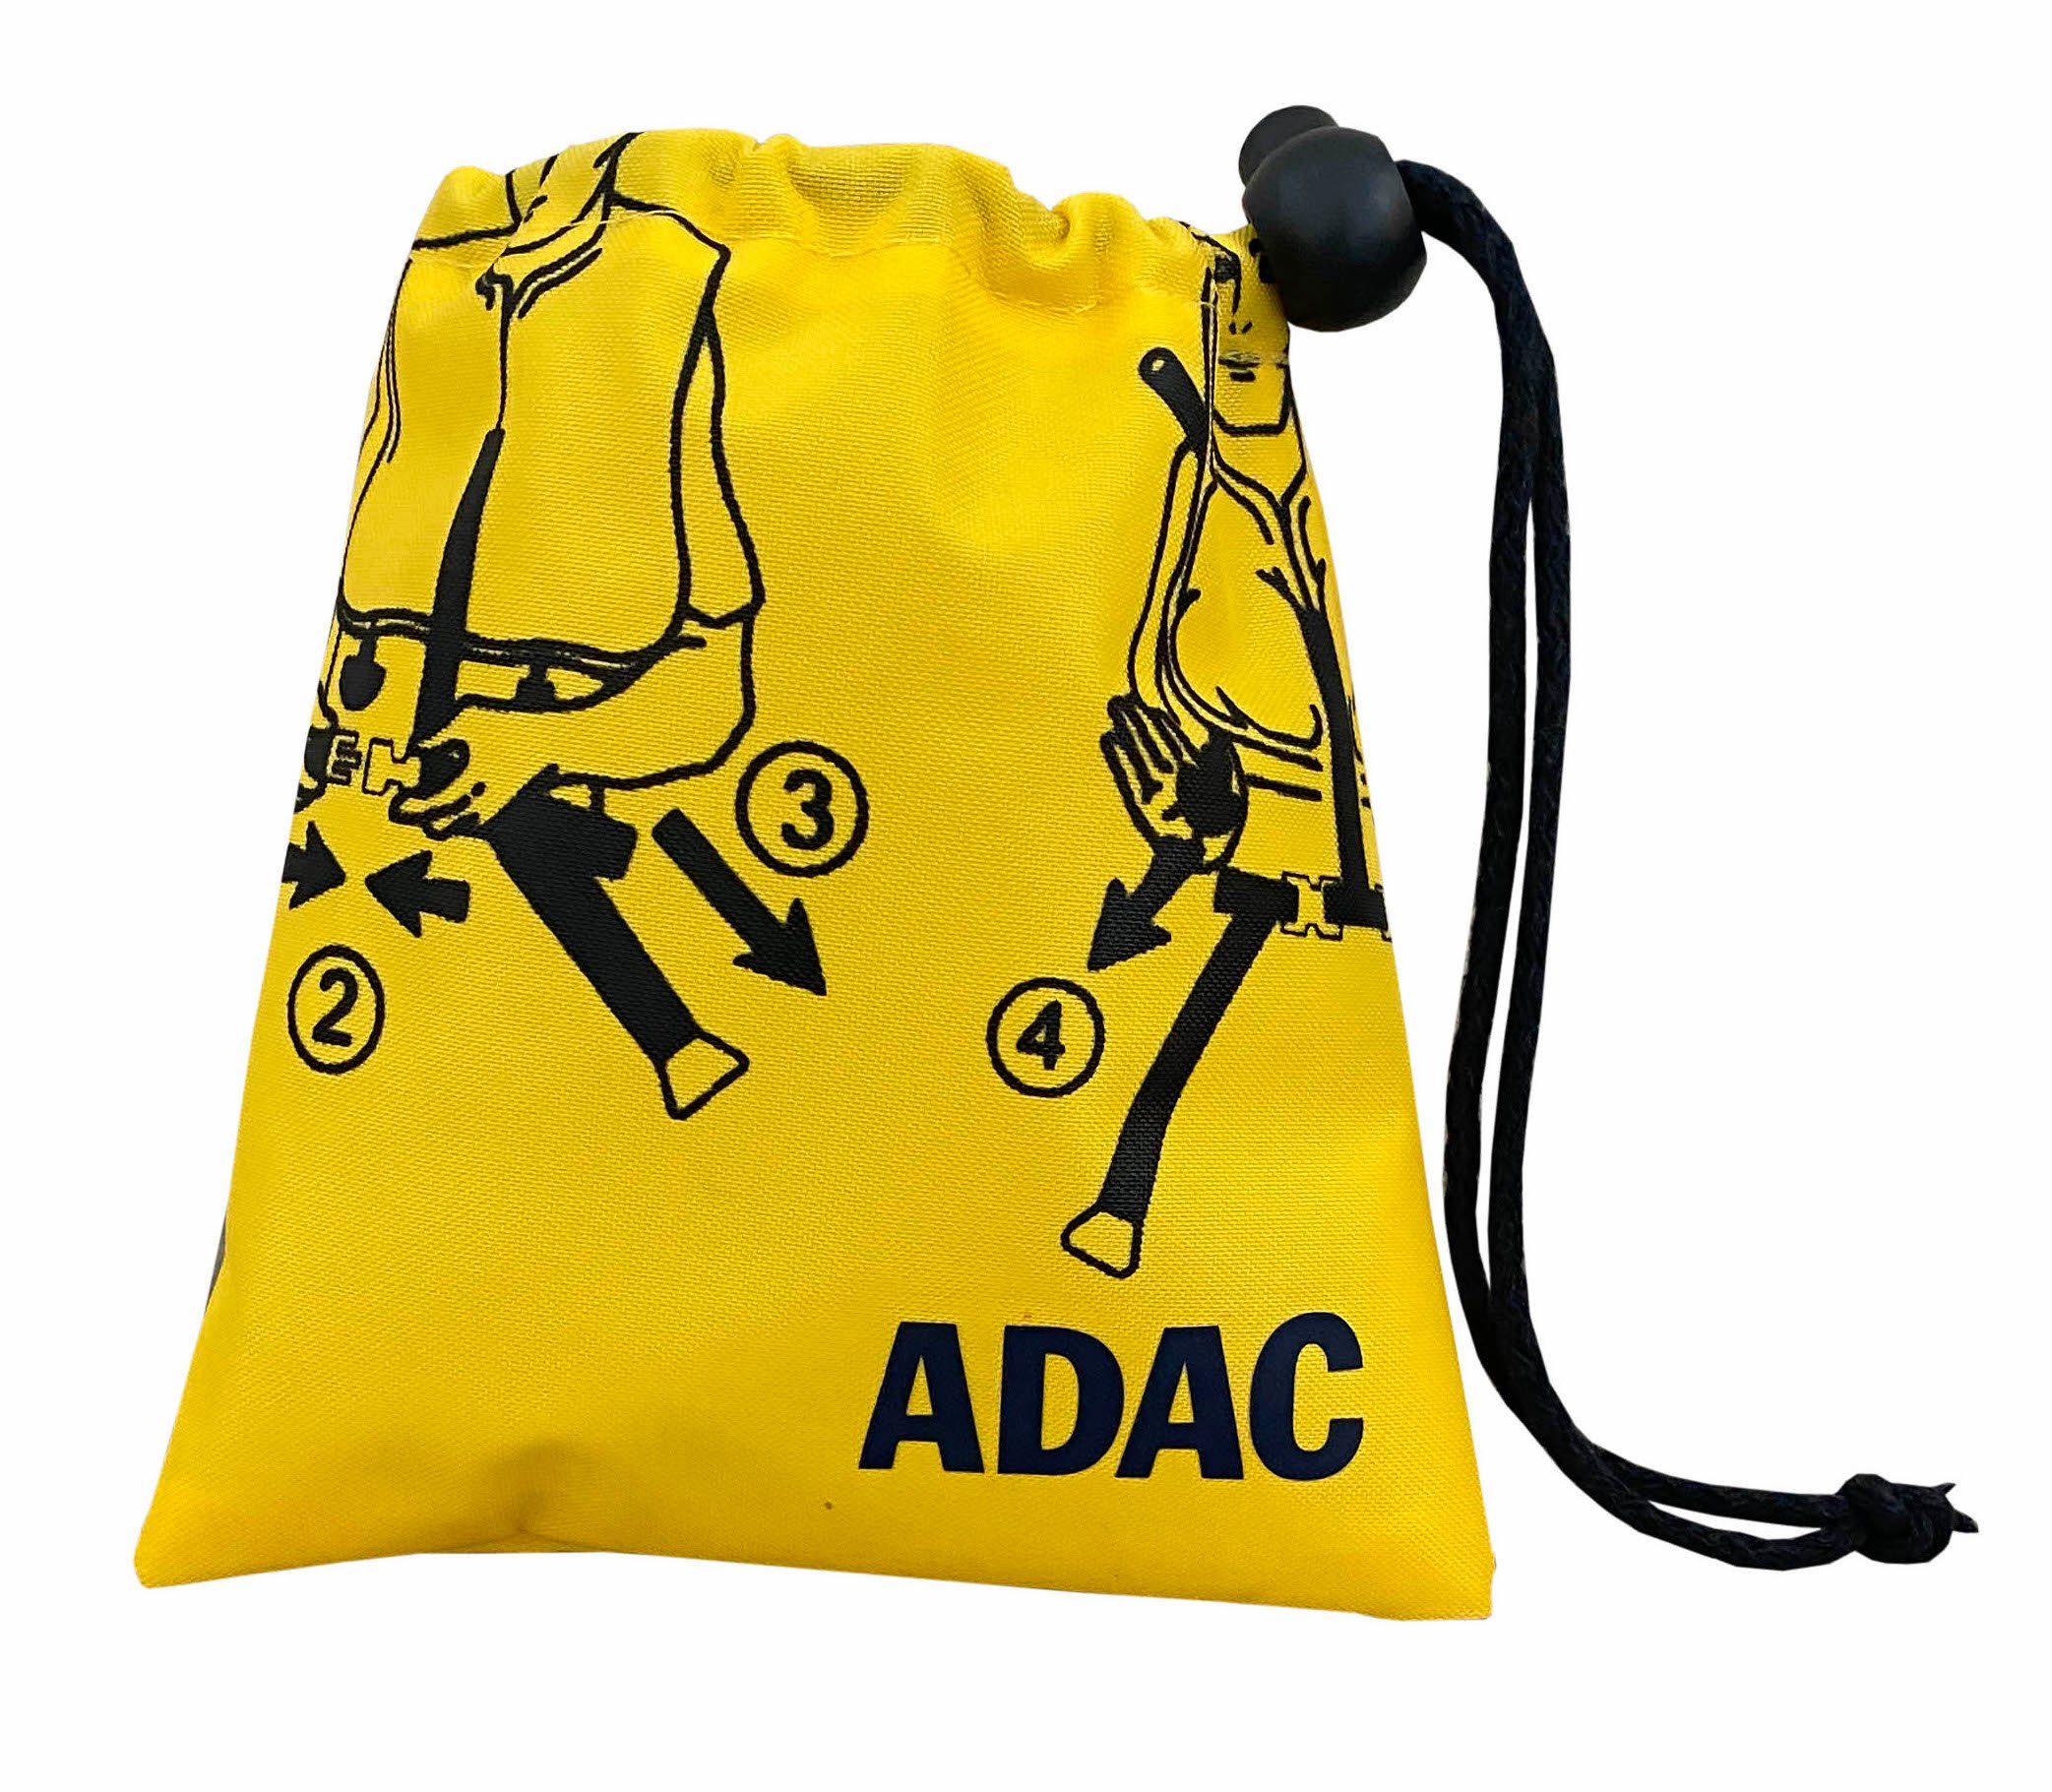 Zugband Beutel to Beutel, Kosmetiktasche Bag Set Life mit mit inkl. ADAC Haken